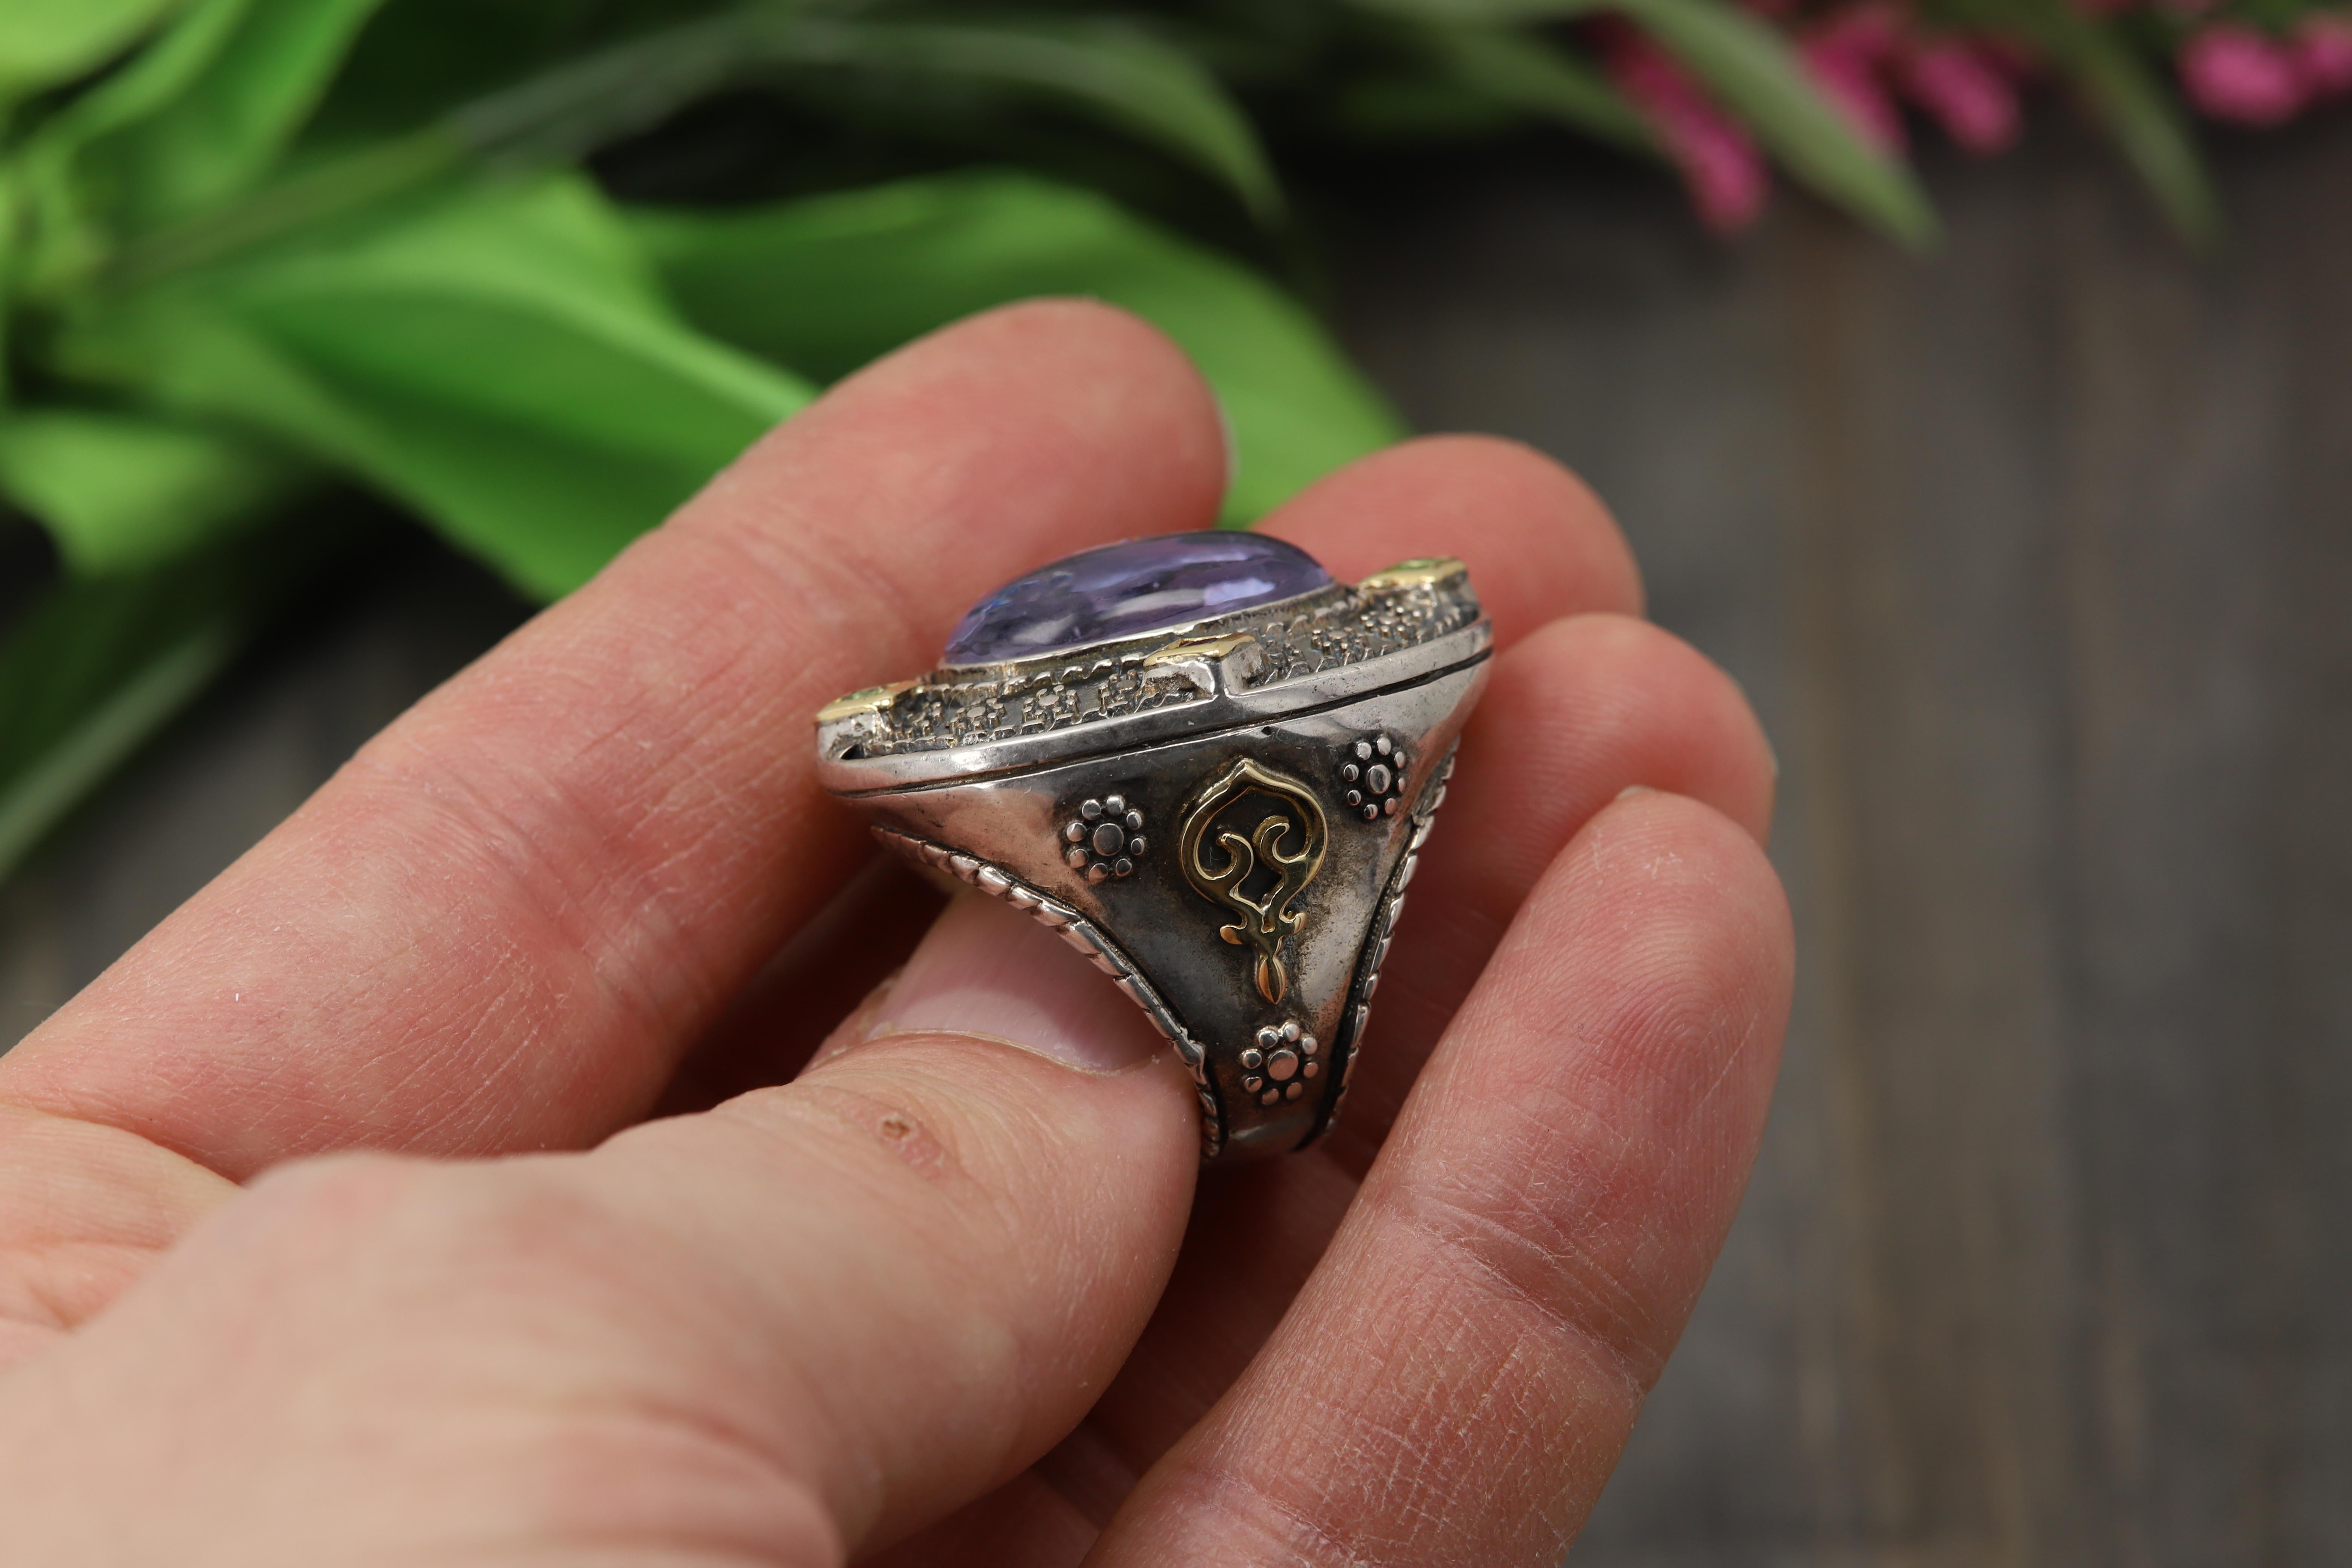 Ring aus venezianischem blauem/grauem Murano-Glas im antiken/gotischen Stil
Eingraviertes Bild von 
Omphale, Königin des Königreichs Lydien in Kleinasien.  In ihrem bekanntesten Mythos ist sie die Herrin des Helden Herakles während eines Jahres der